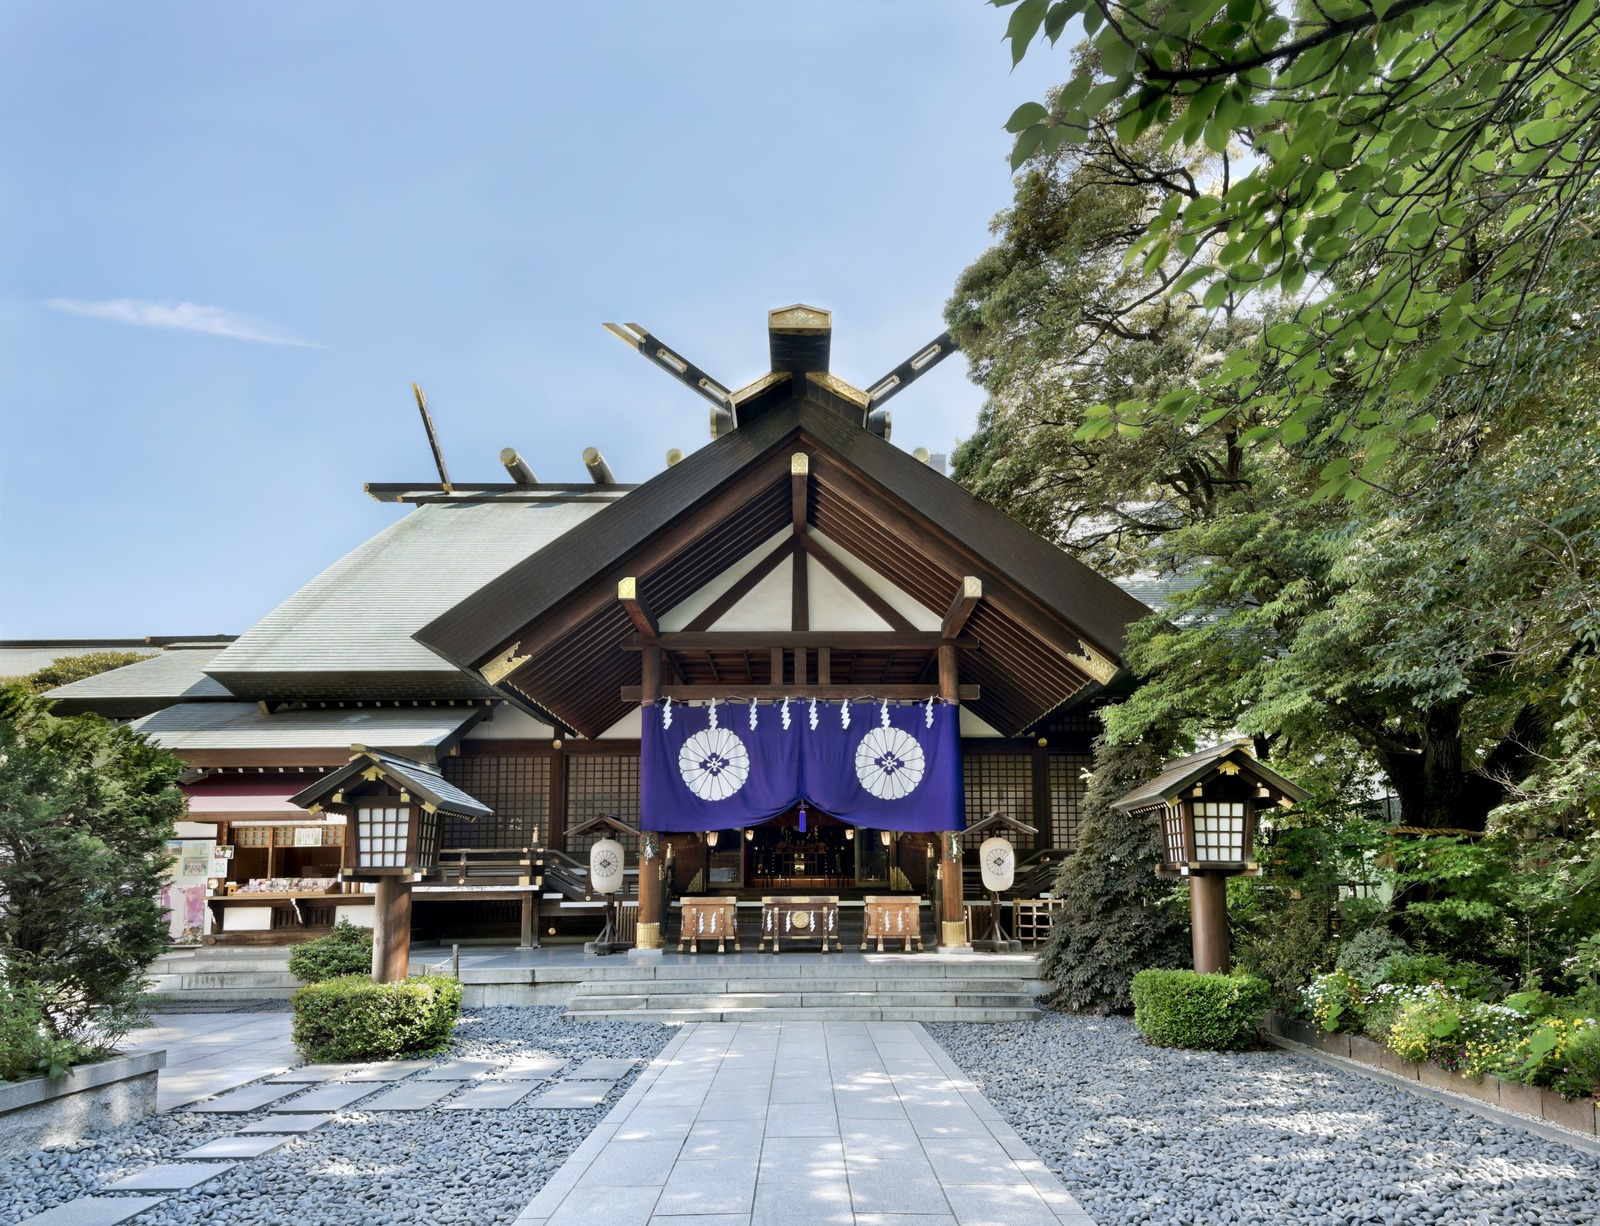 スポット 東京大神宮 公式 東京都千代田区の観光情報公式サイト Visit Chiyoda